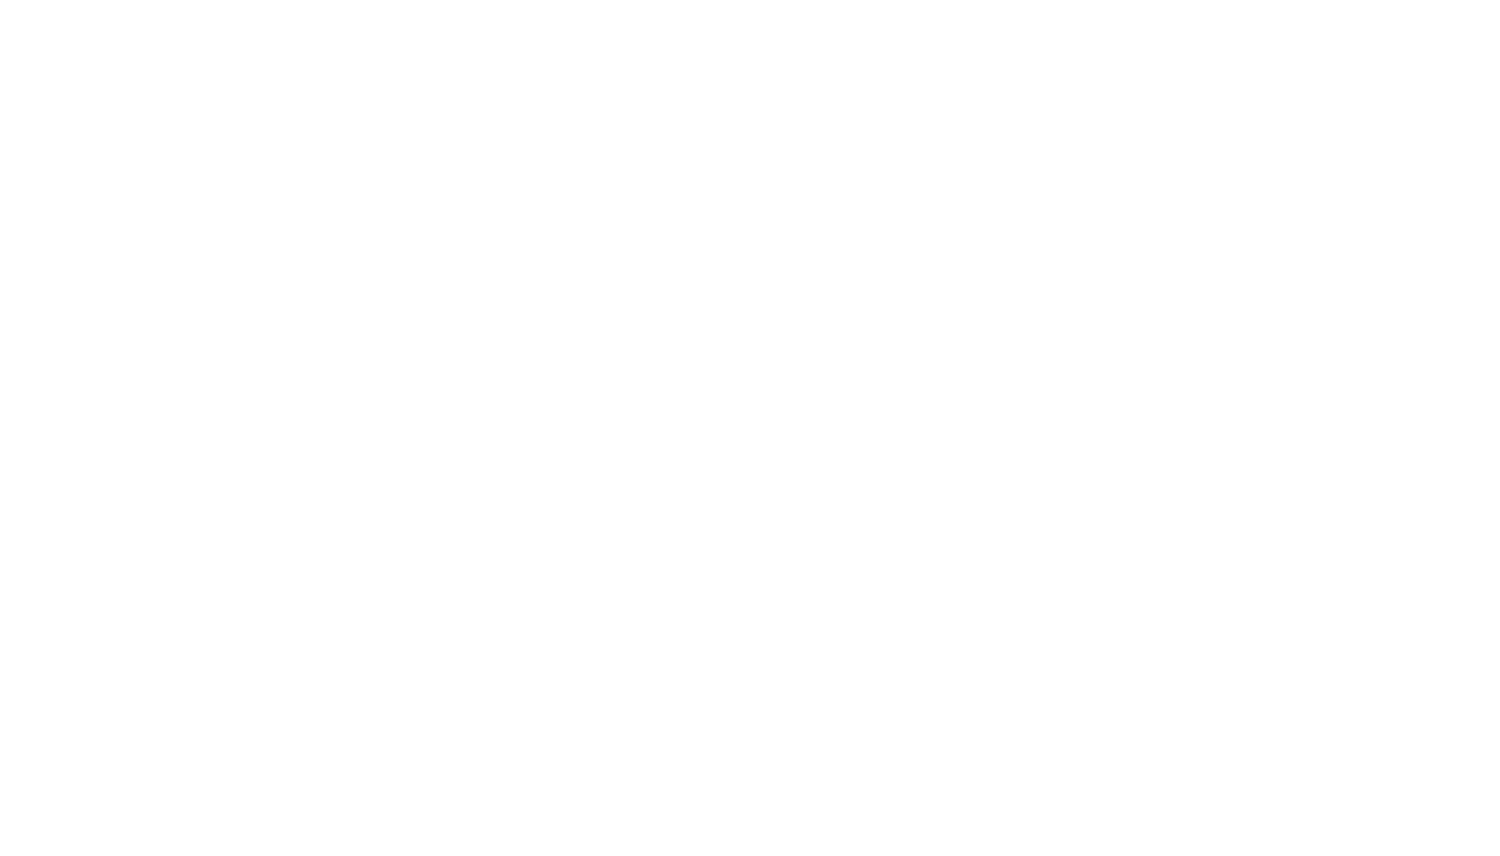 Monash Carbon Capture and Conversion